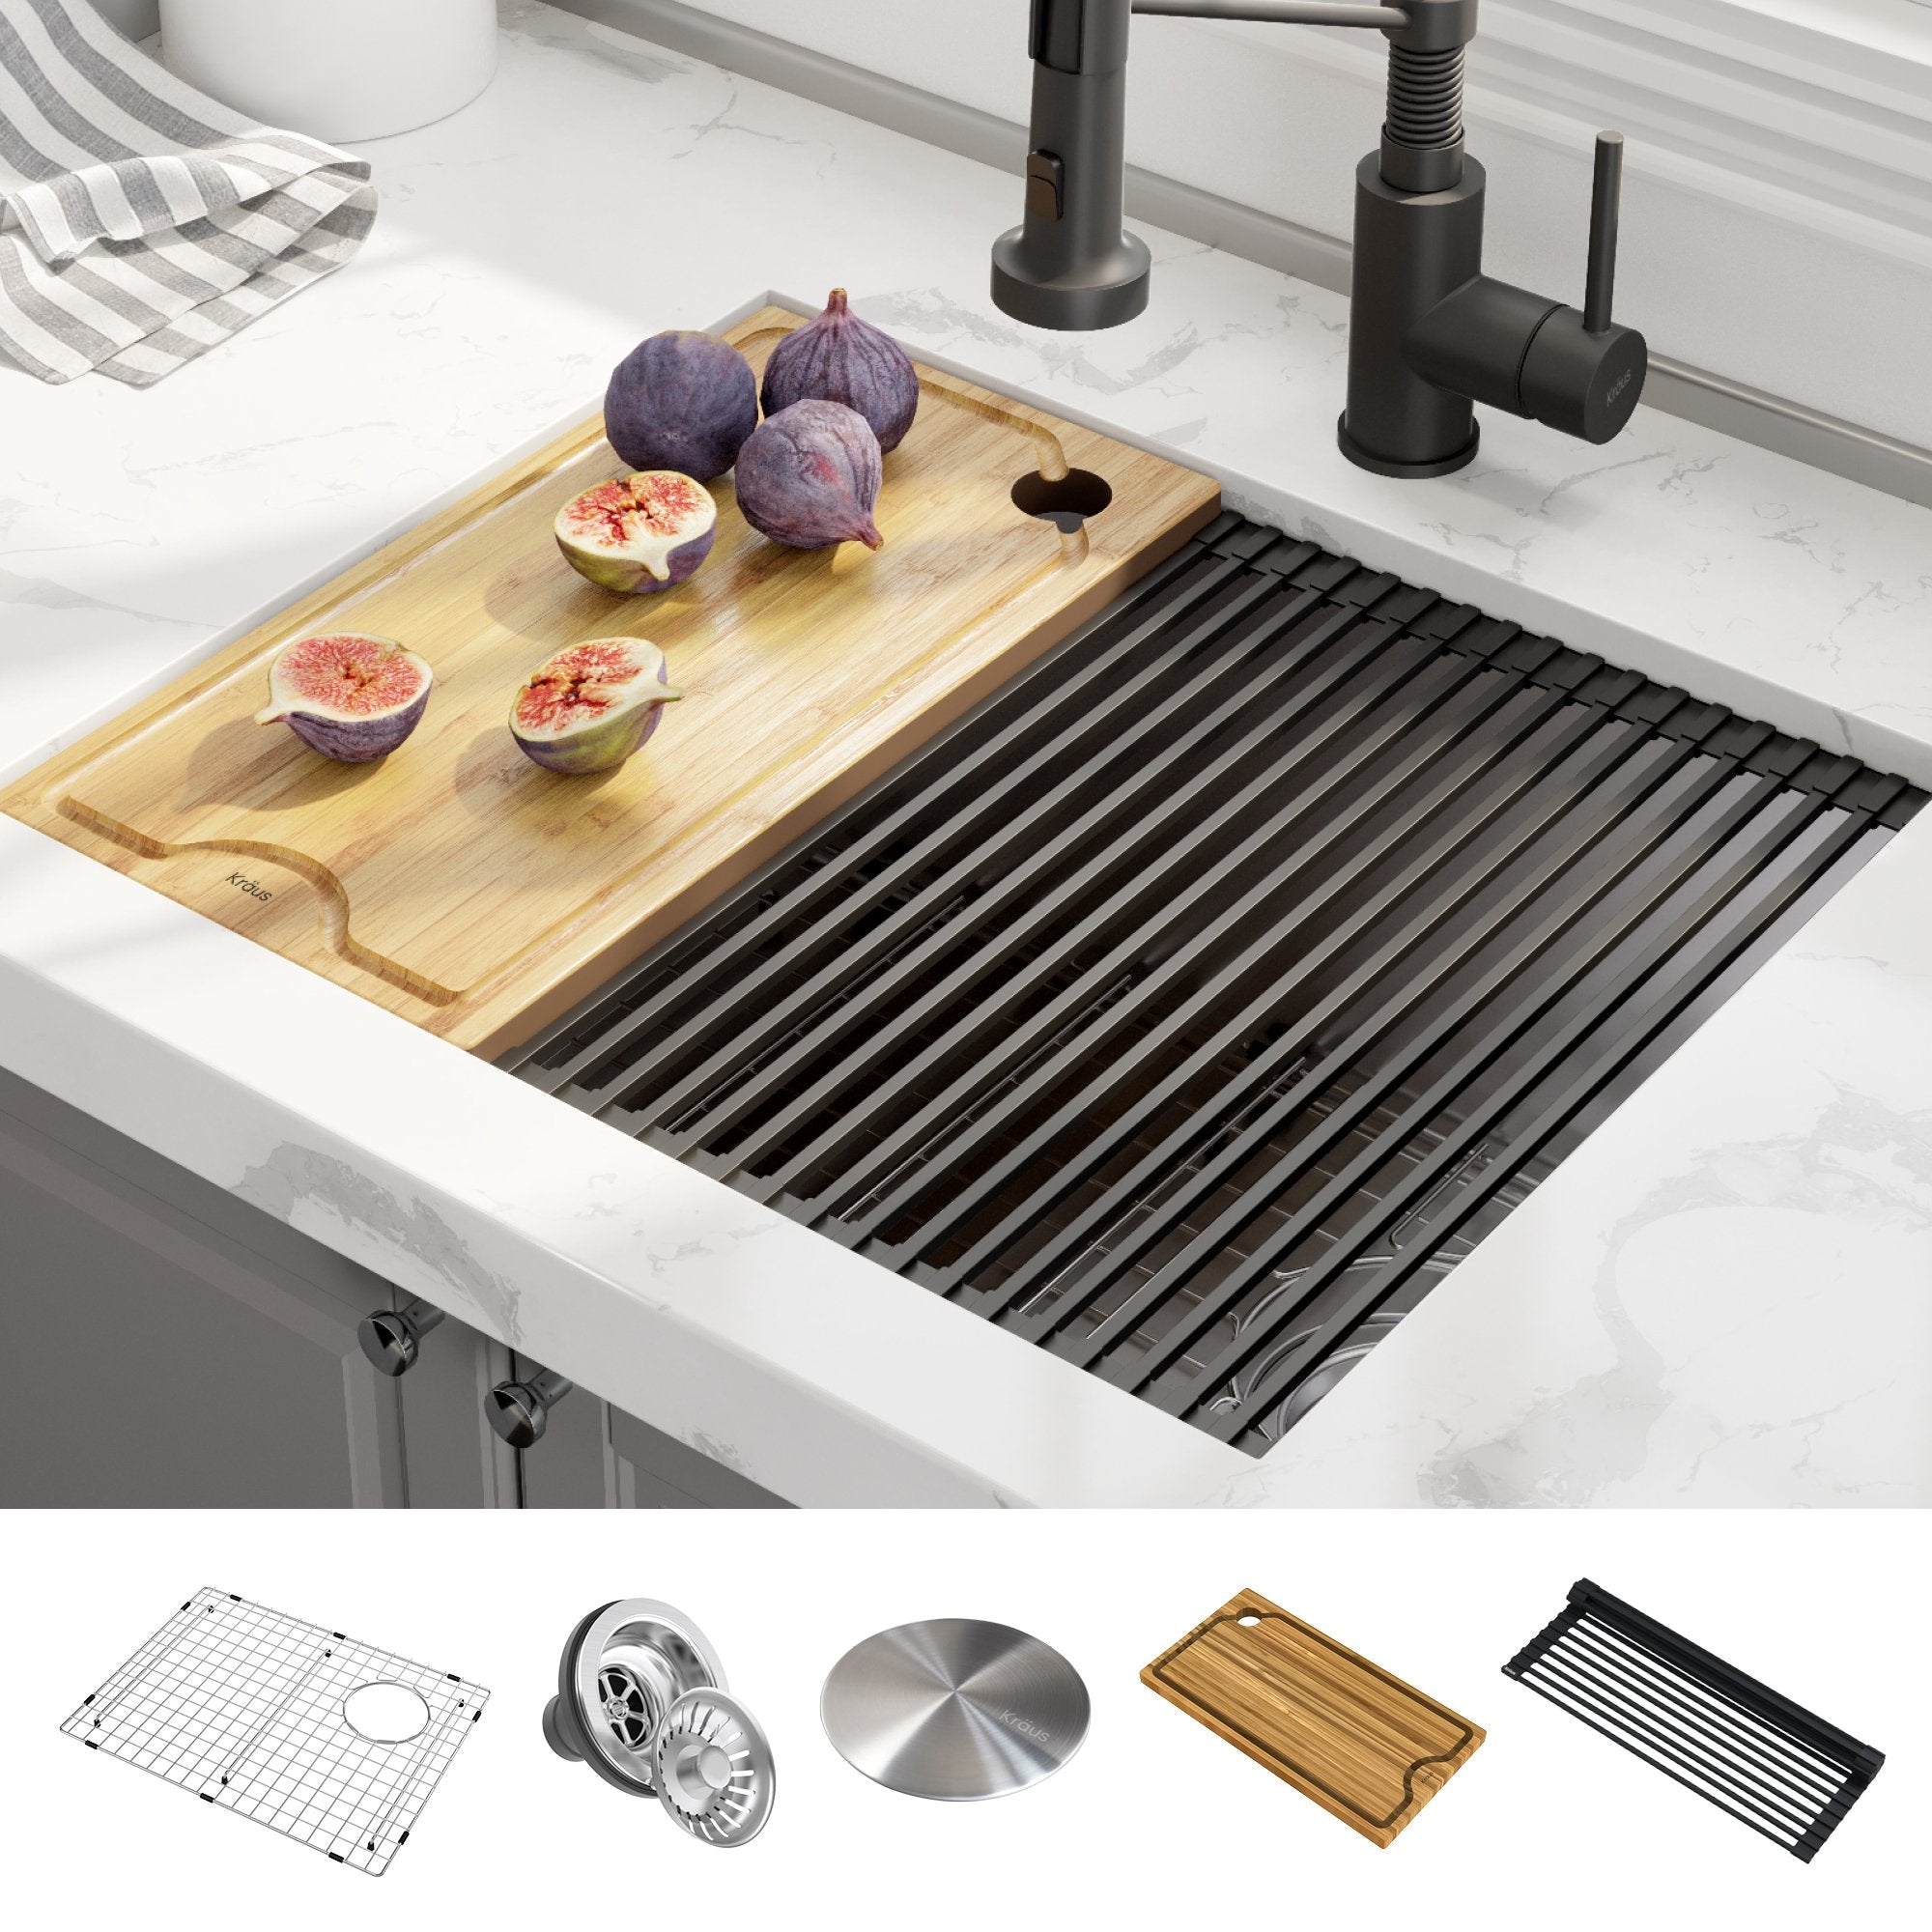 KRAUS Kore Workstation 23-inch Undermount 16 Gauge Single Bowl Stainless Steel Kitchen Sink with Accessories-Kitchen Sinks-KRAUS